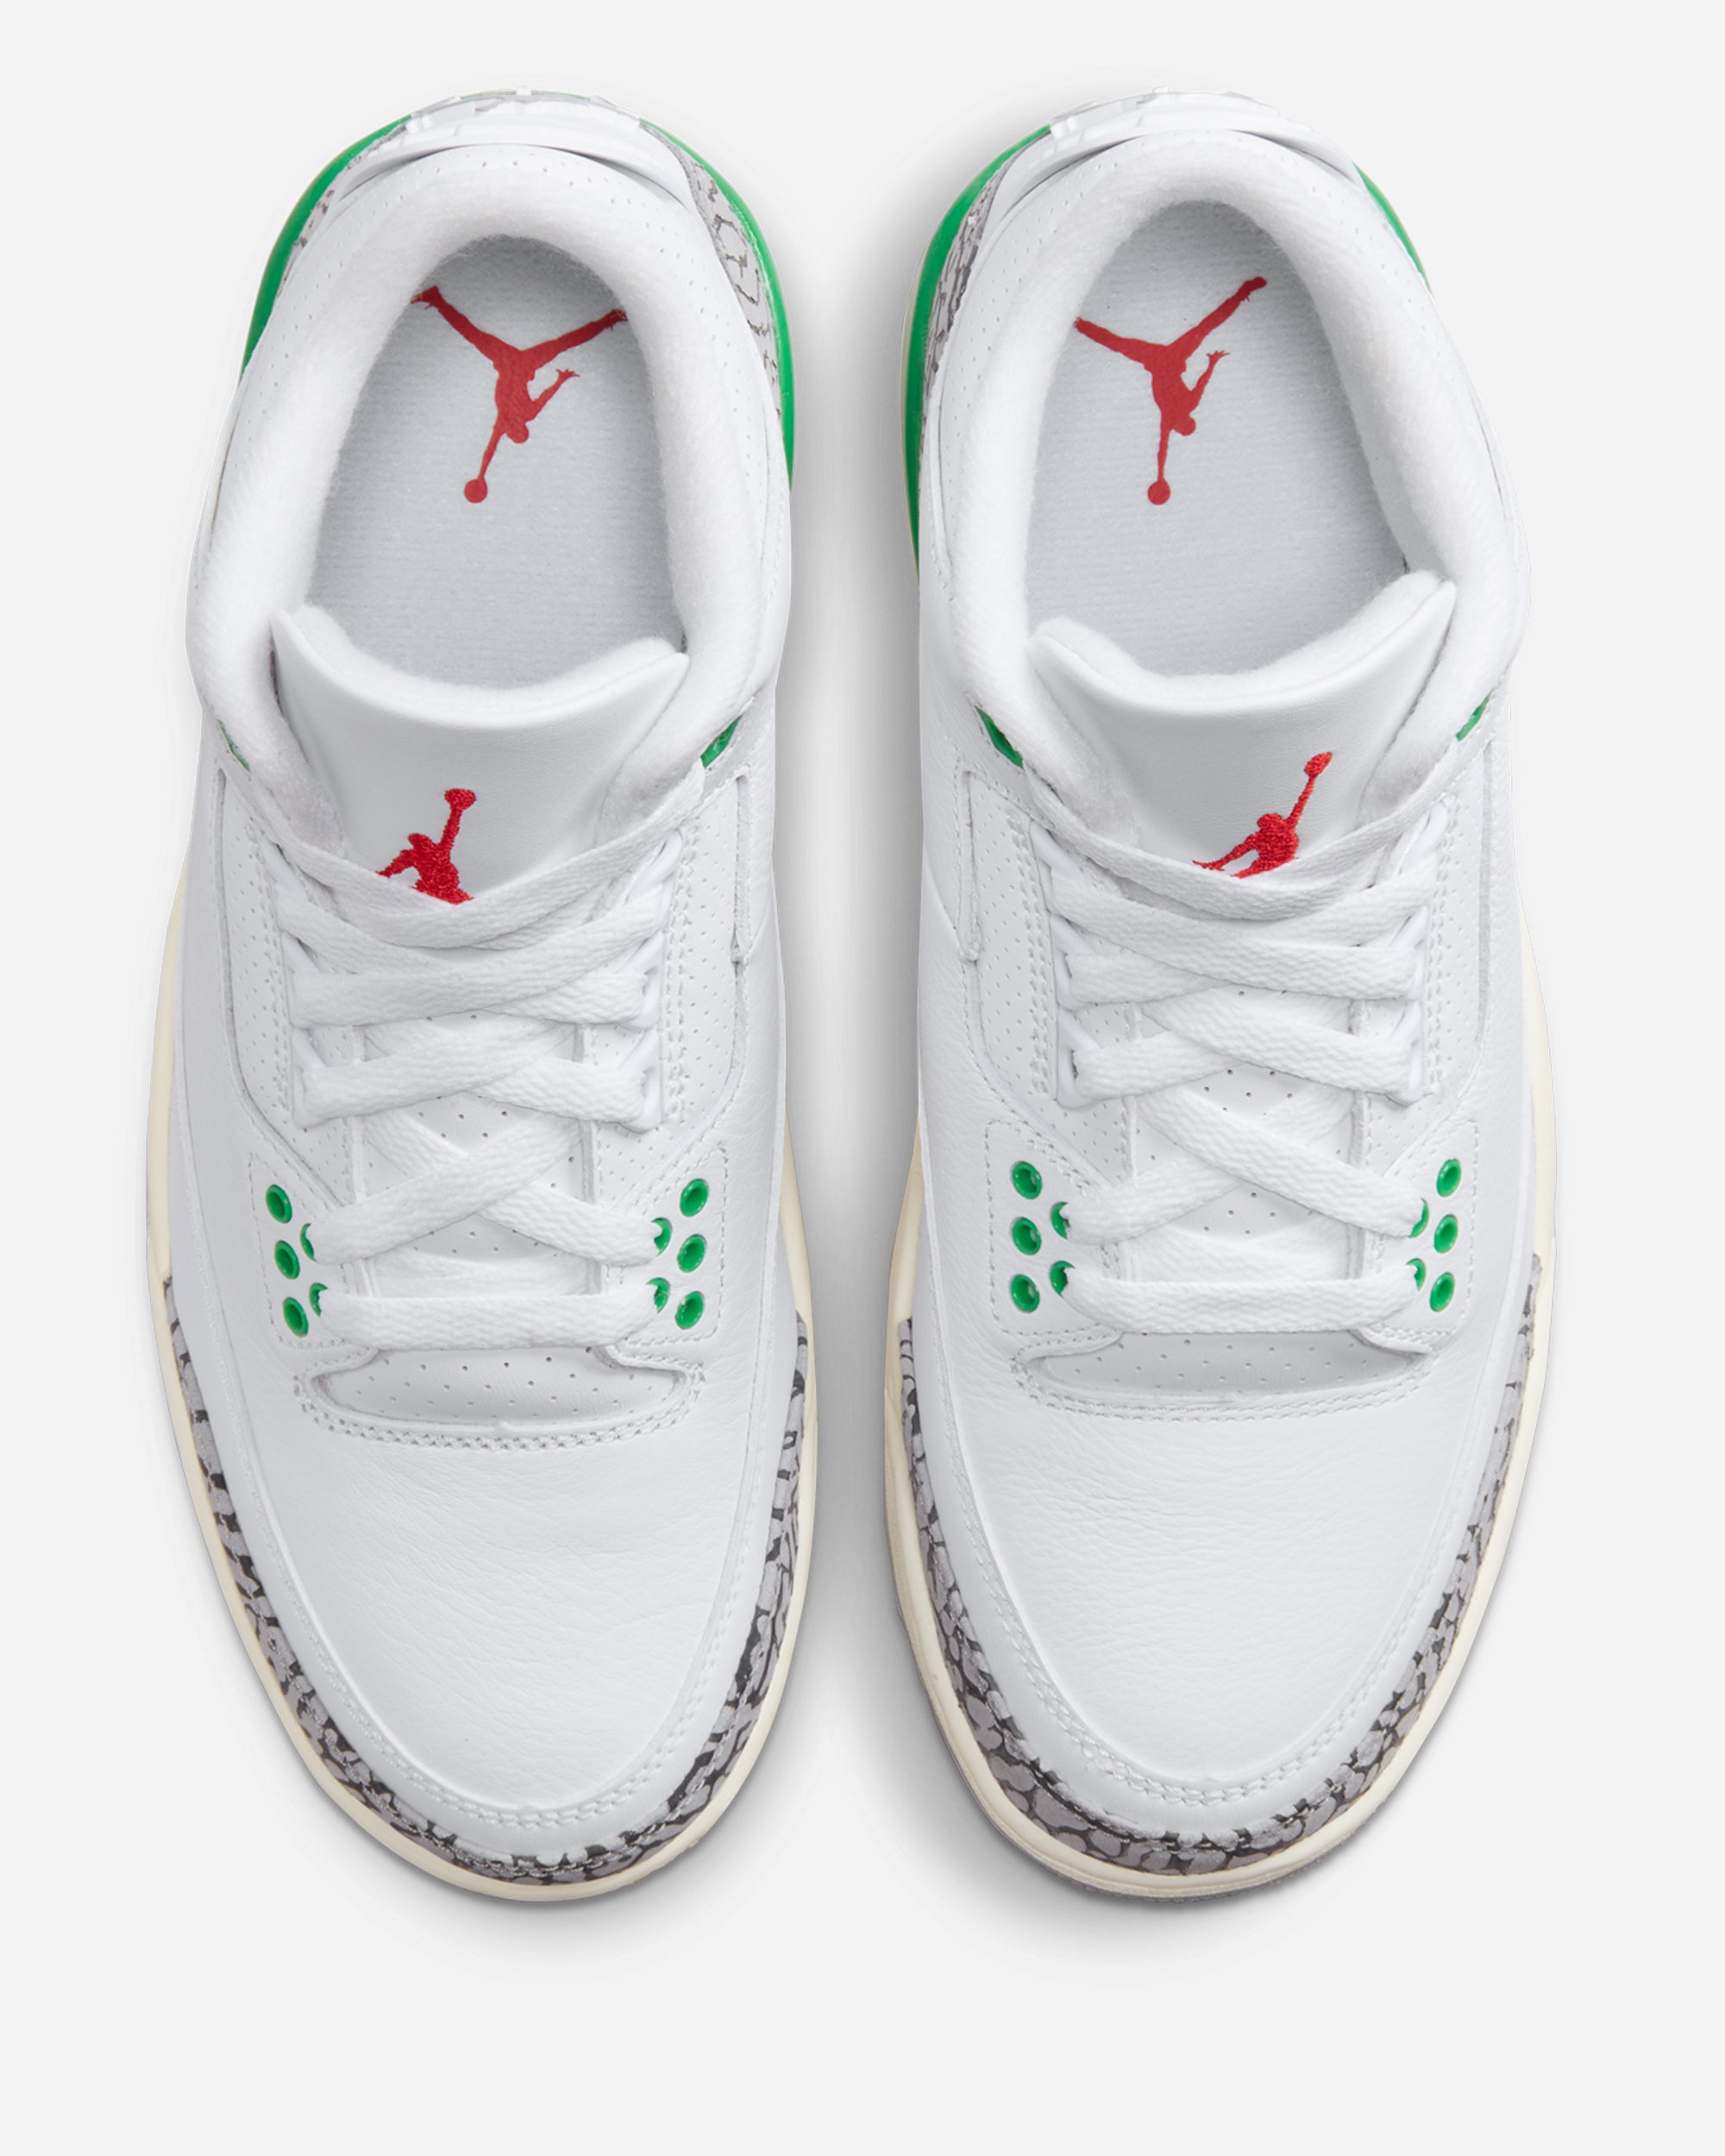 Jordan Brand Air Jordan 3 Retro 'Lucky Green' WHITE/VARSITY RED-LUCKY GREEN CK9246-136